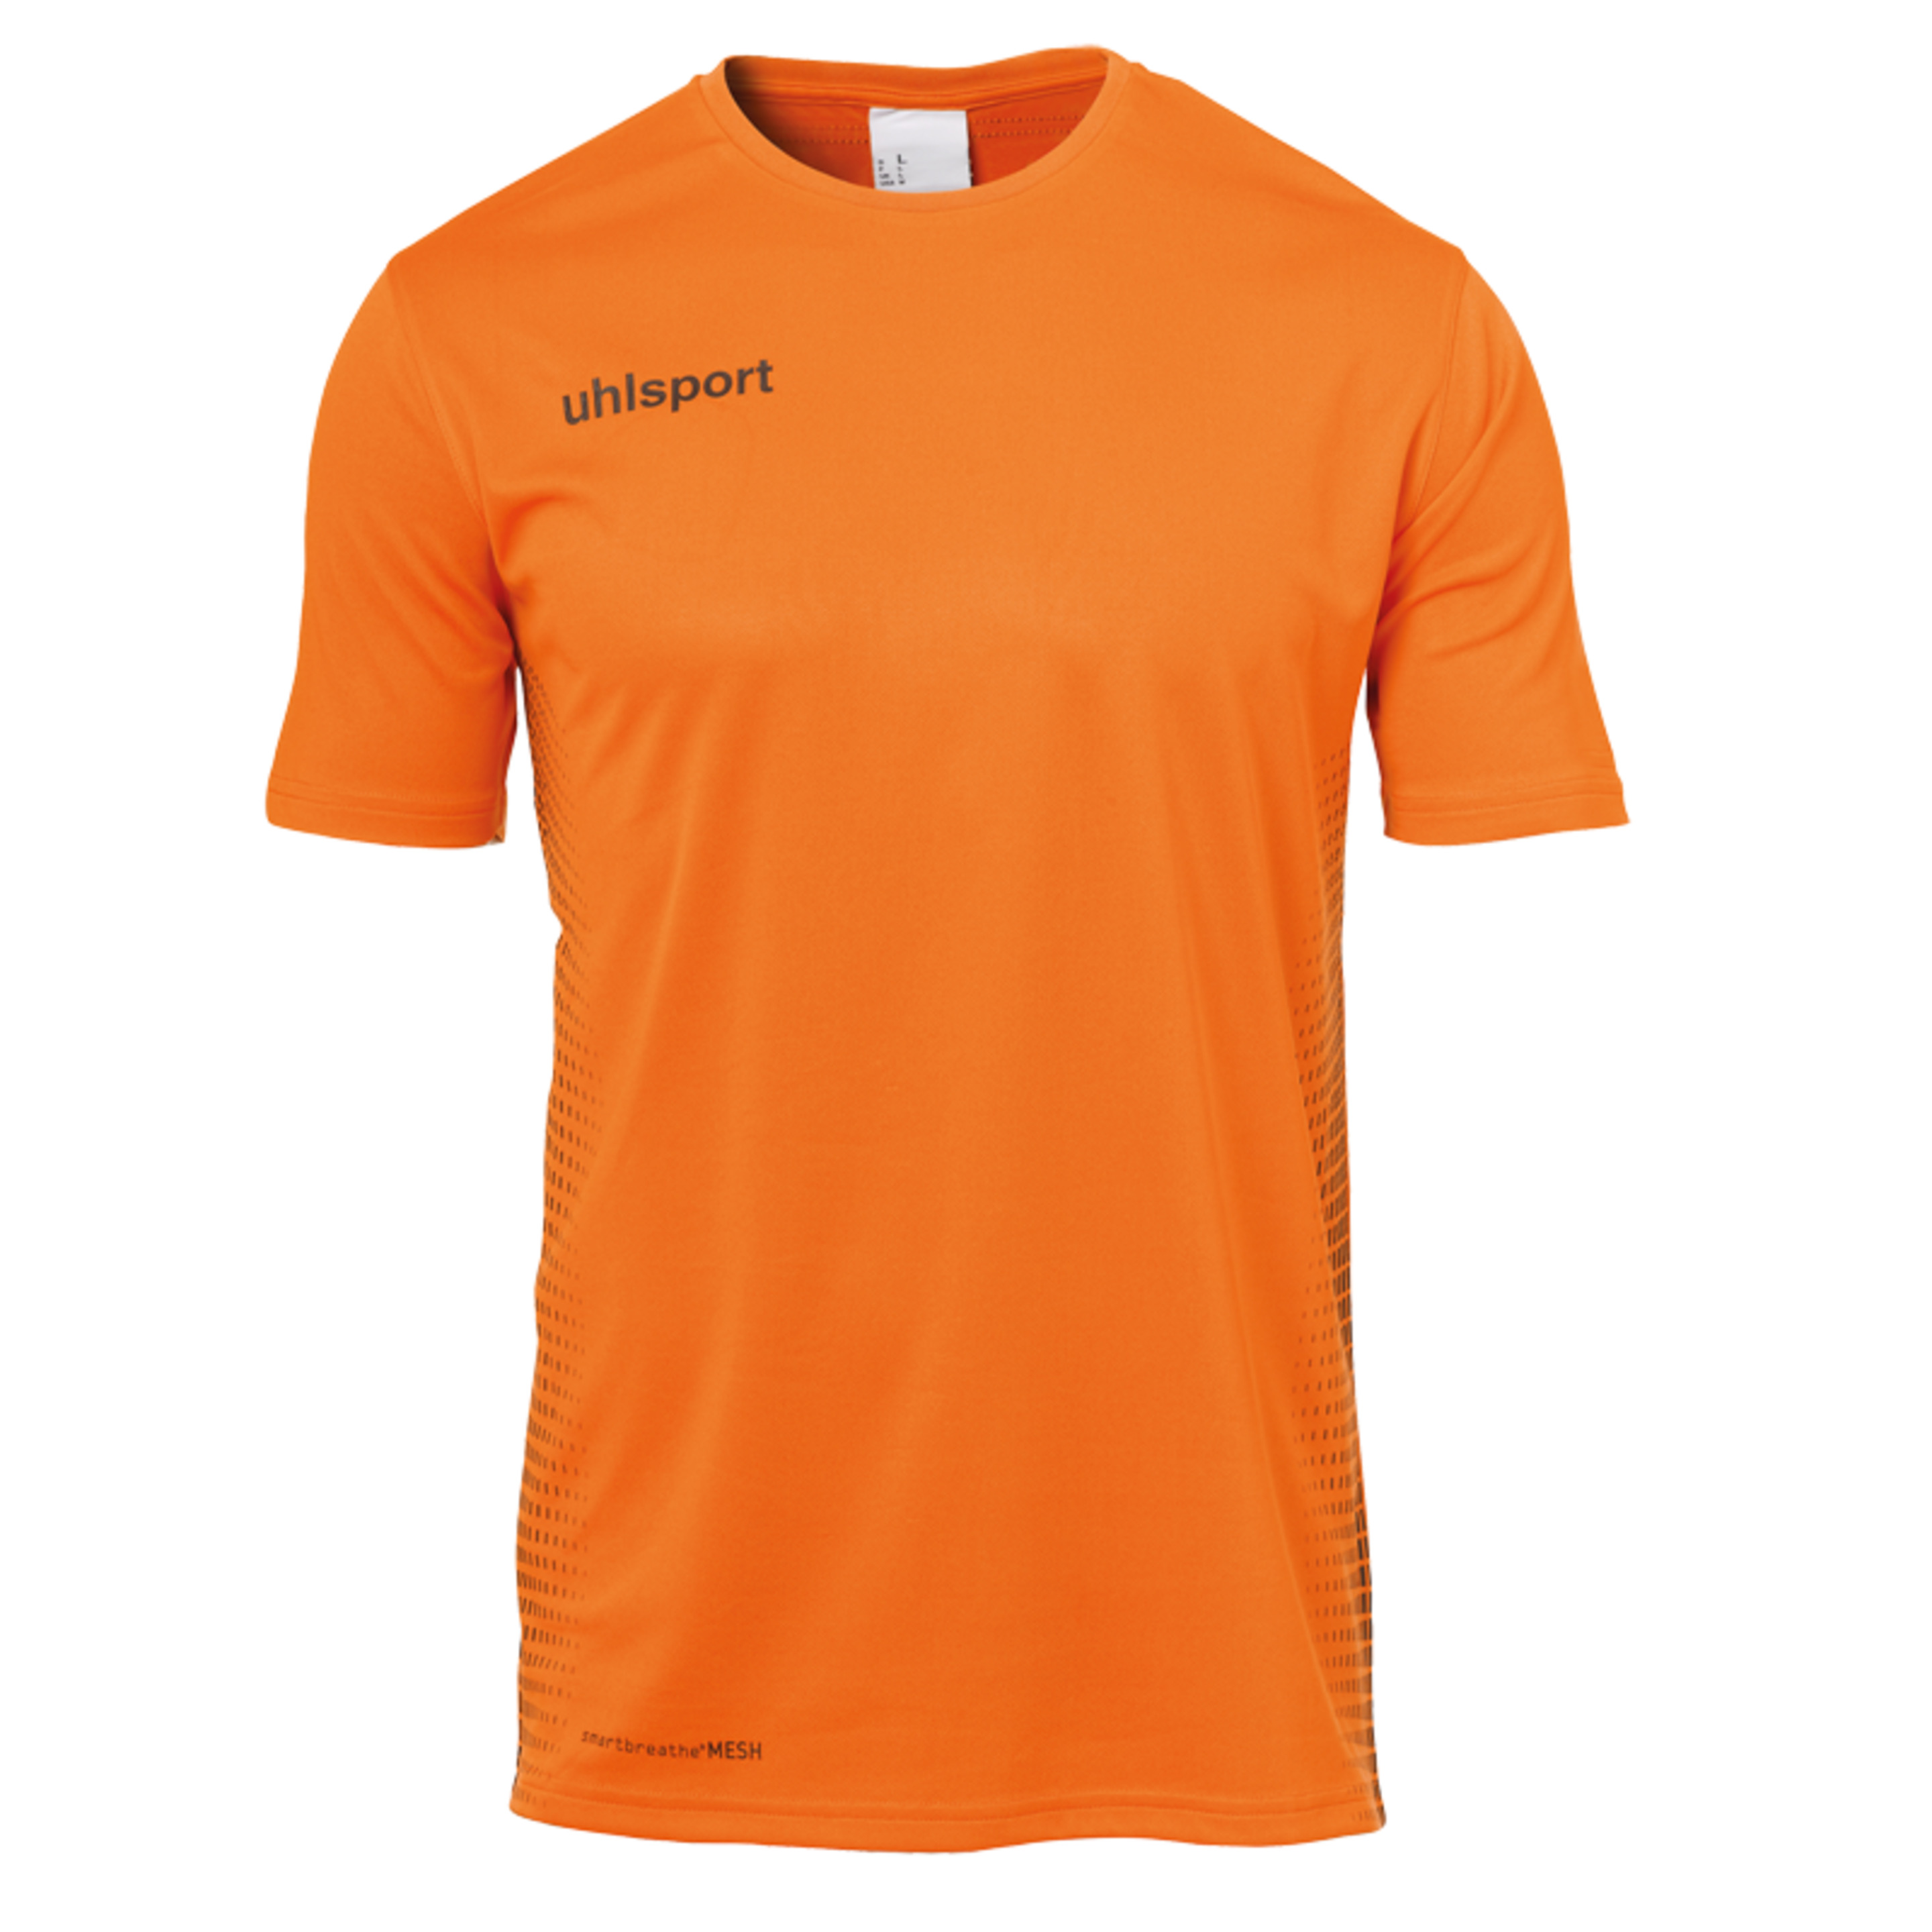 Score Kit Ss Naranja Fluor/negro Uhlsport - negro_naranja - Score Kit Ss Naranja Fluor/negro Uhlsport  MKP